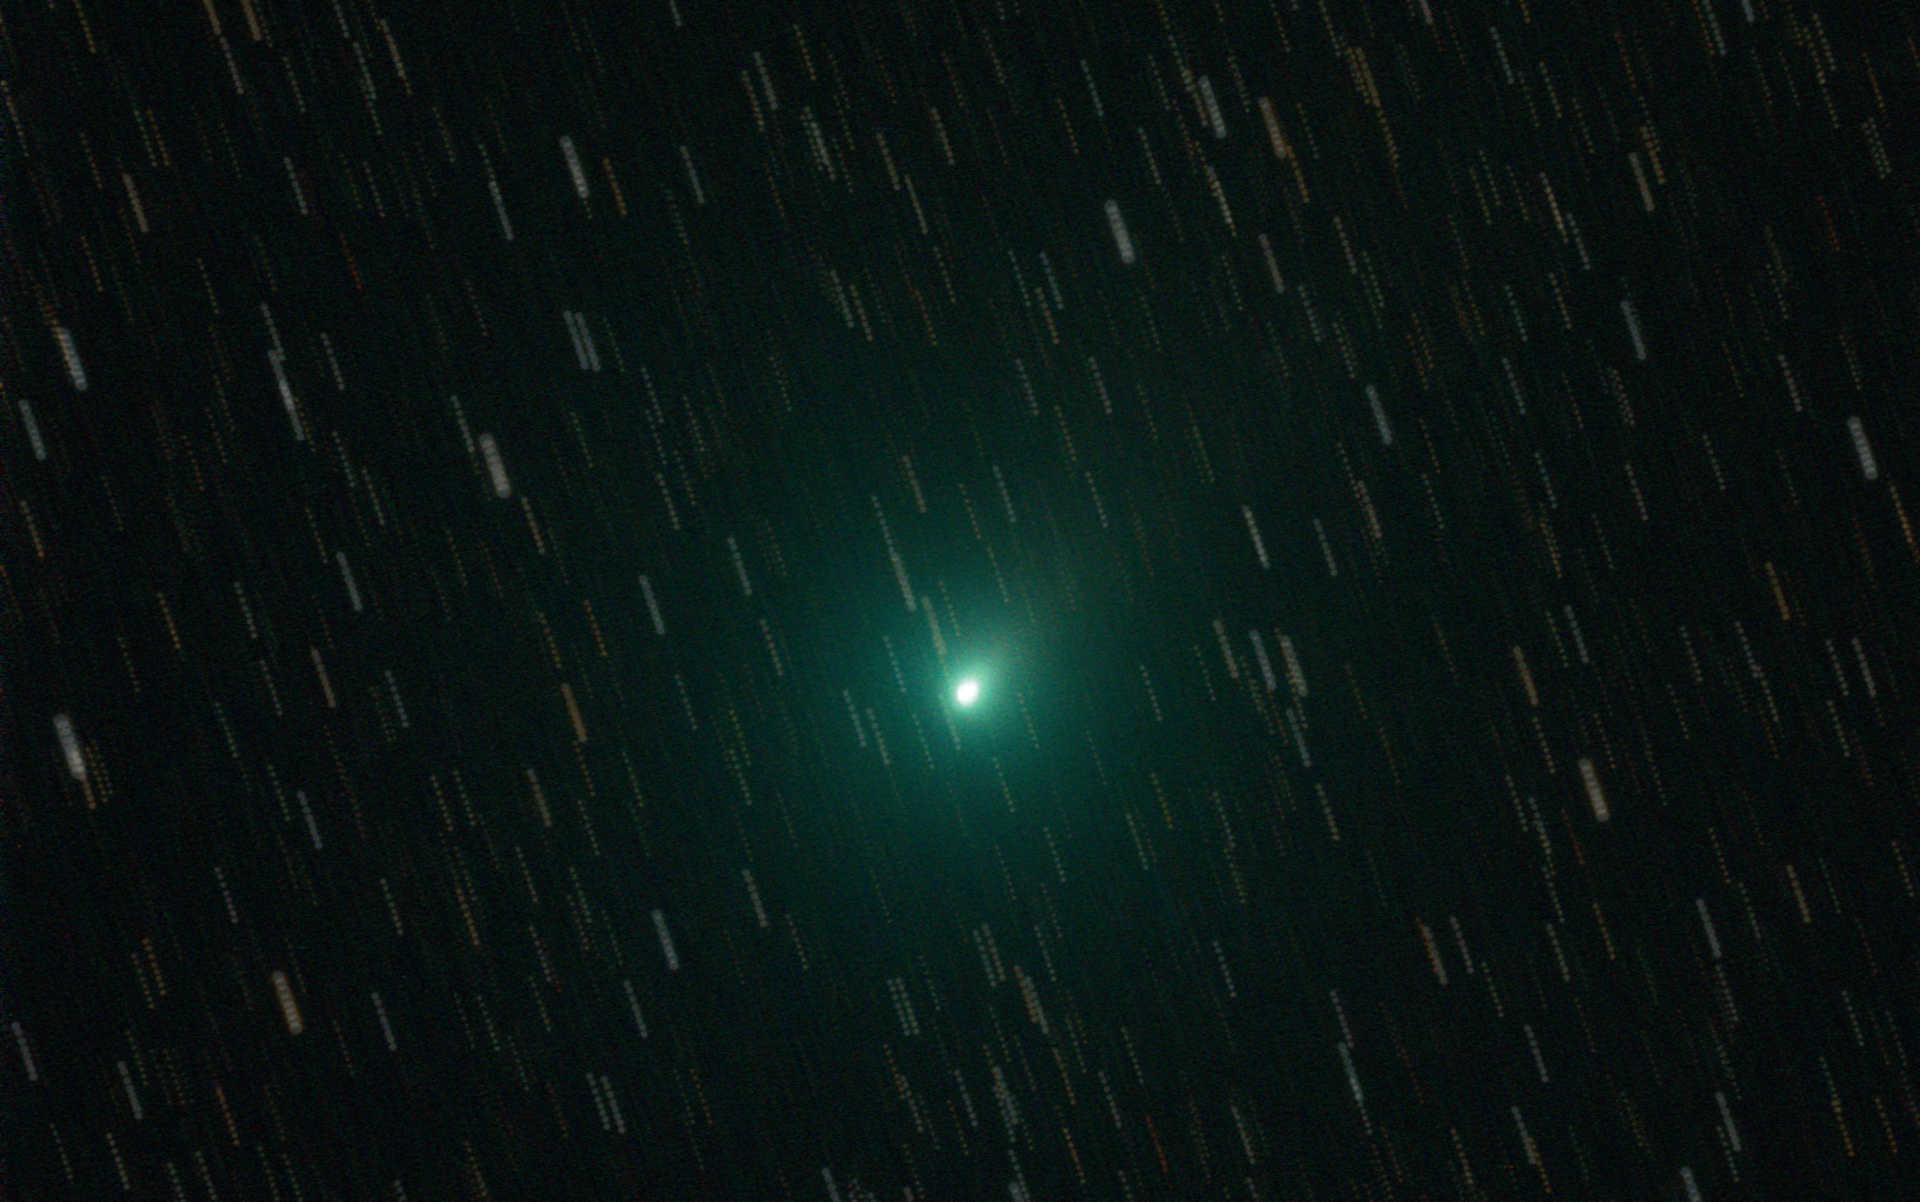 Fotografia conjunta do cometa 103P (Hartley). Para o processamento de imagem existem duas hipóteses: as fotografias individuais são centradas nos cometas, pelo que as estrelas aparecem como traços na imagem de conjunto, mostrando assim de forma surpreendente a deslocação dinâmica de um cometa pelo céu noturno